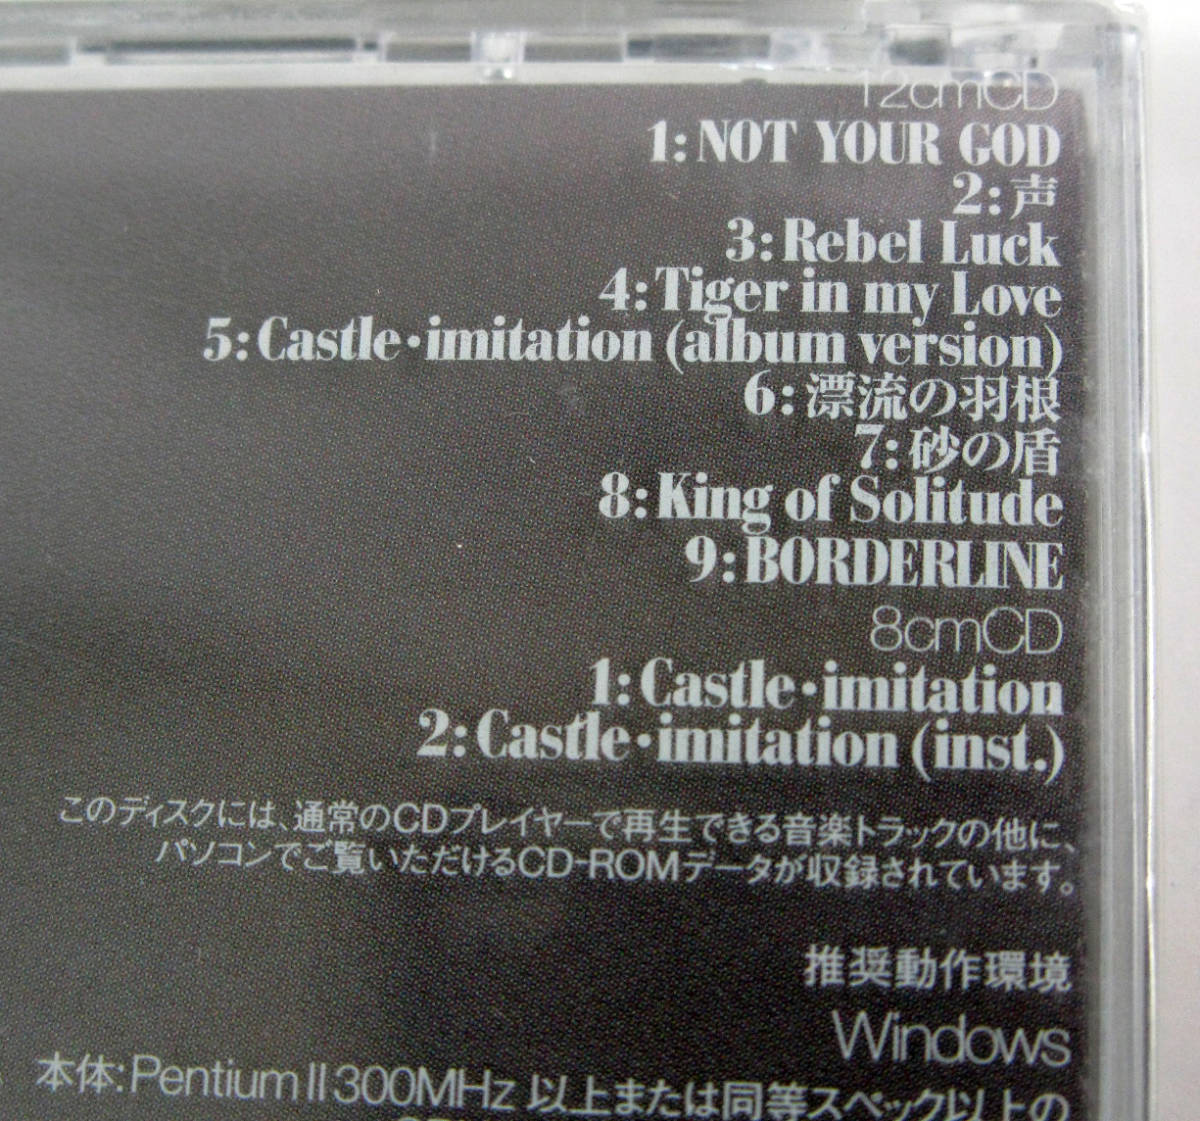  нераспечатанный CD / Onitsuka Chihiro shuga- высокий Sugar High первый раз ограничение запись 